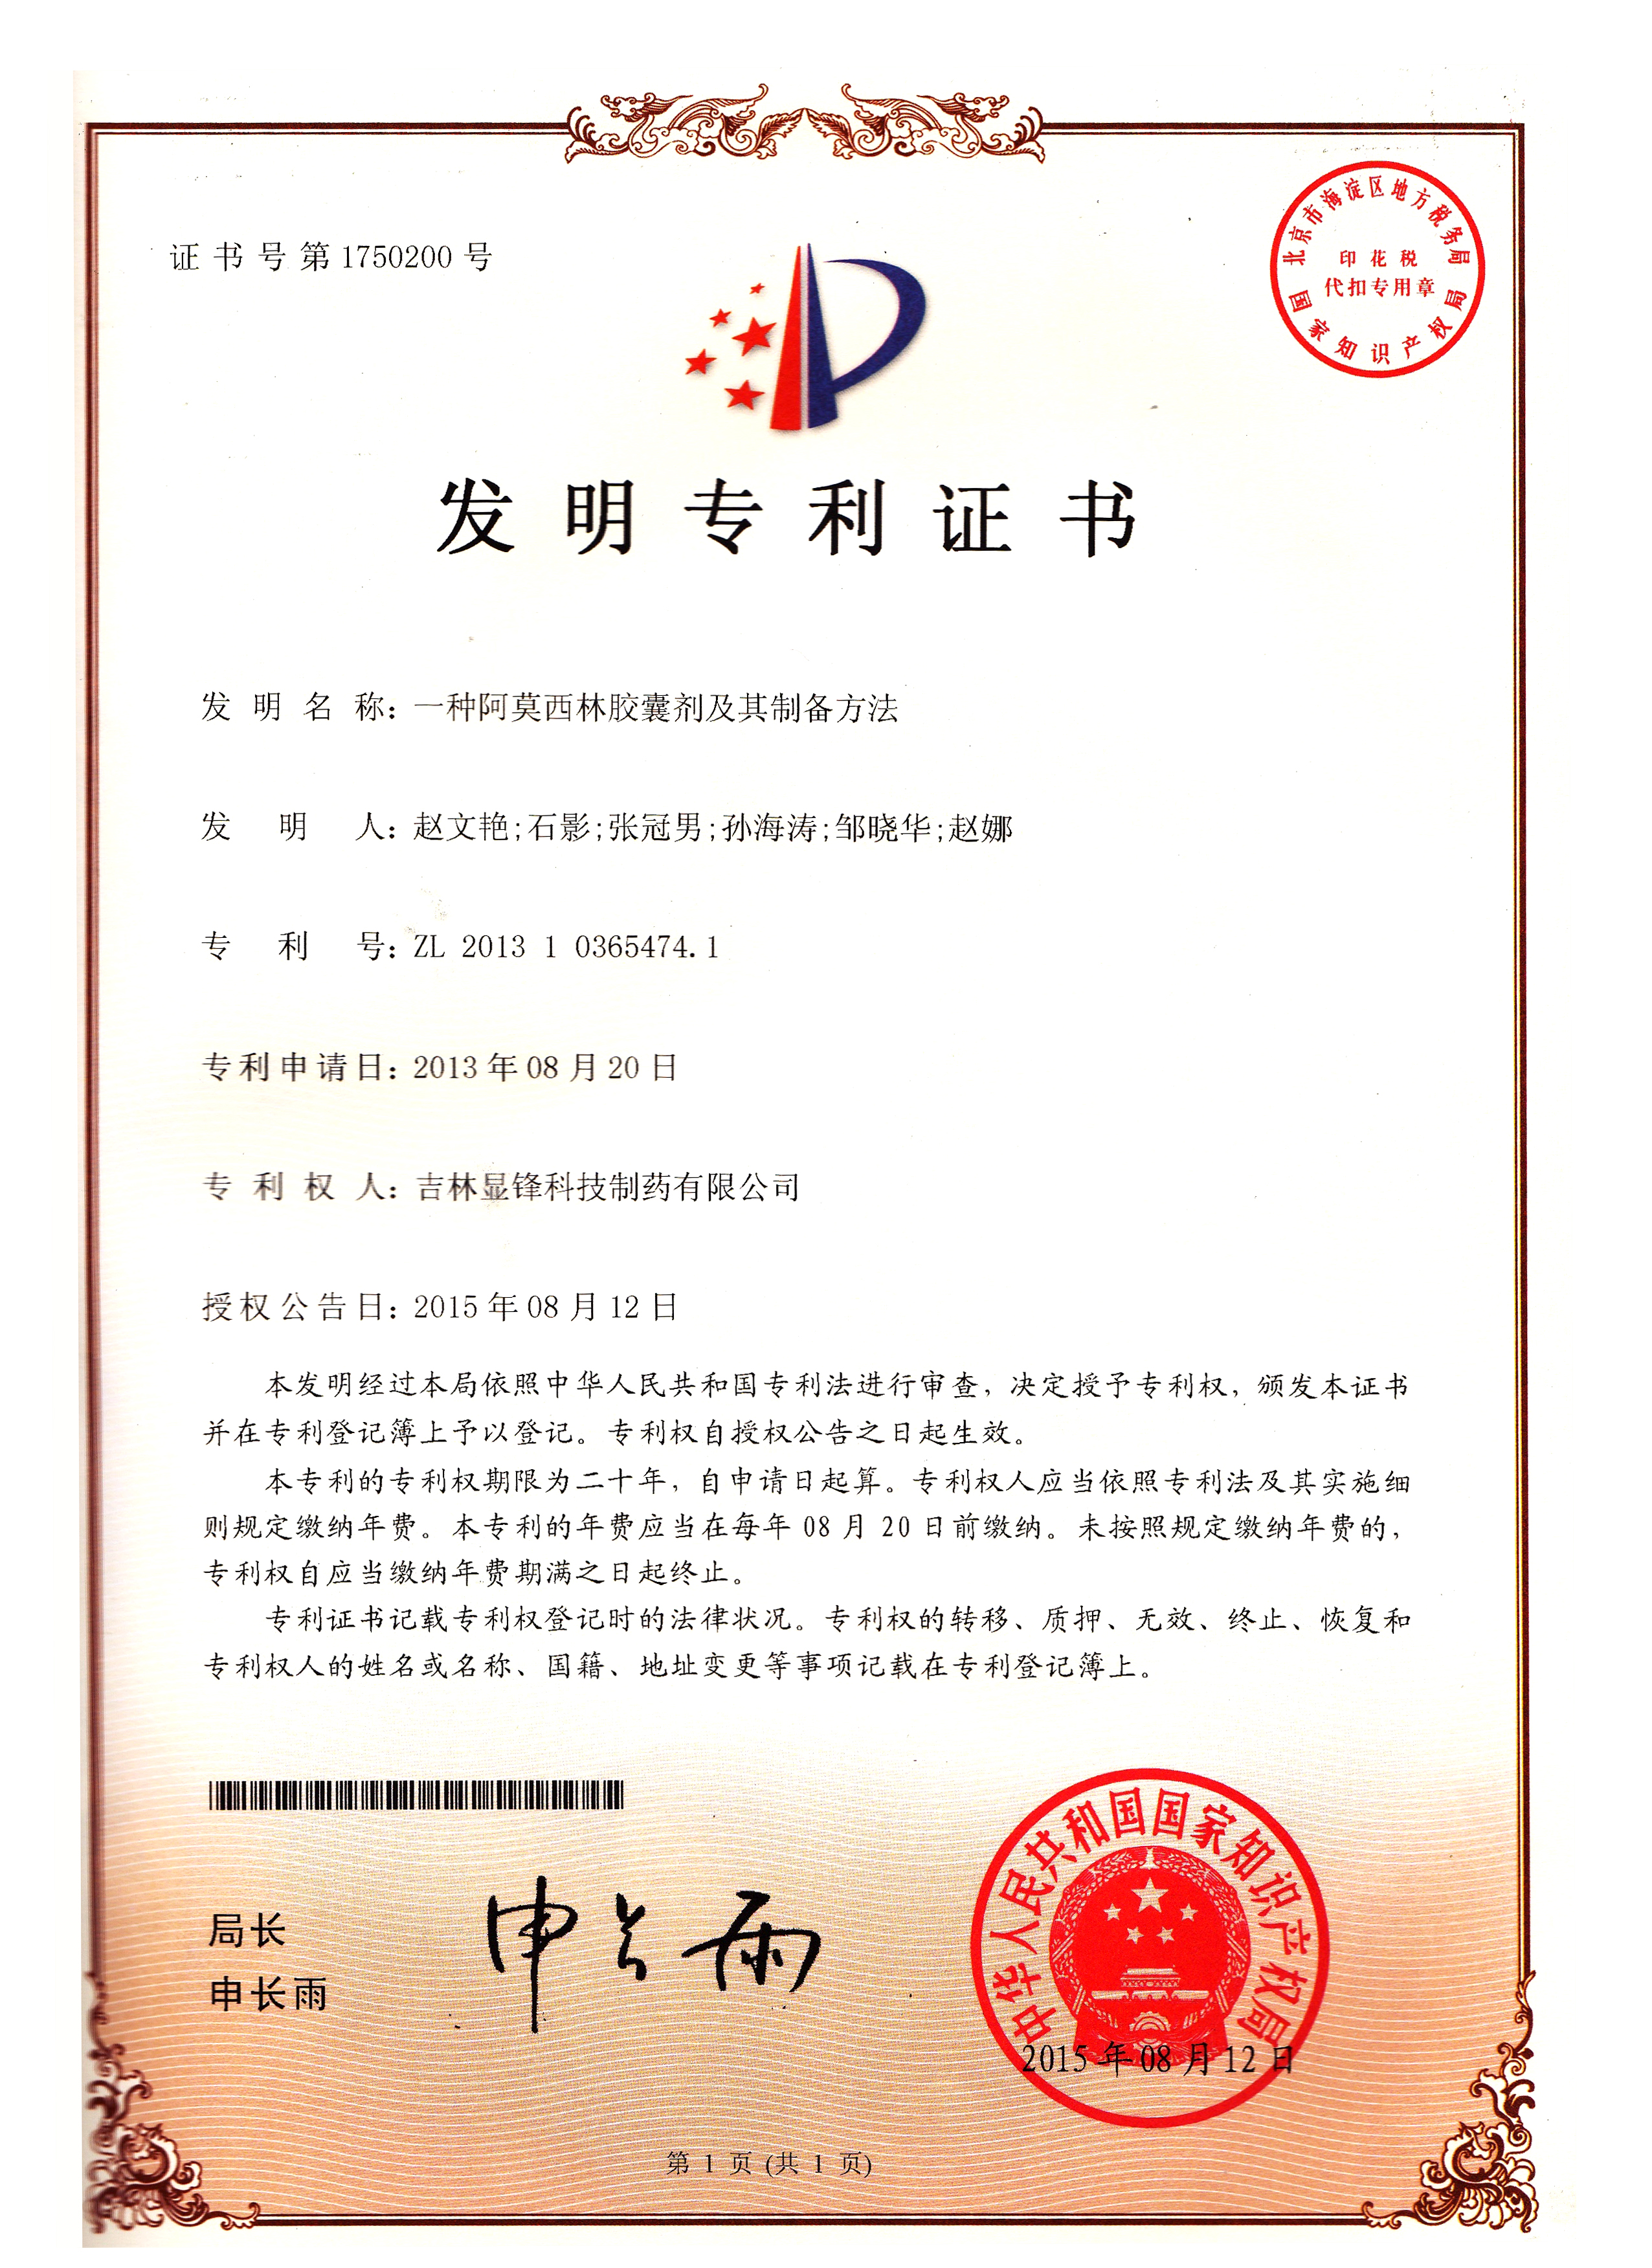 阿莫西林胶囊生产工艺专利证书